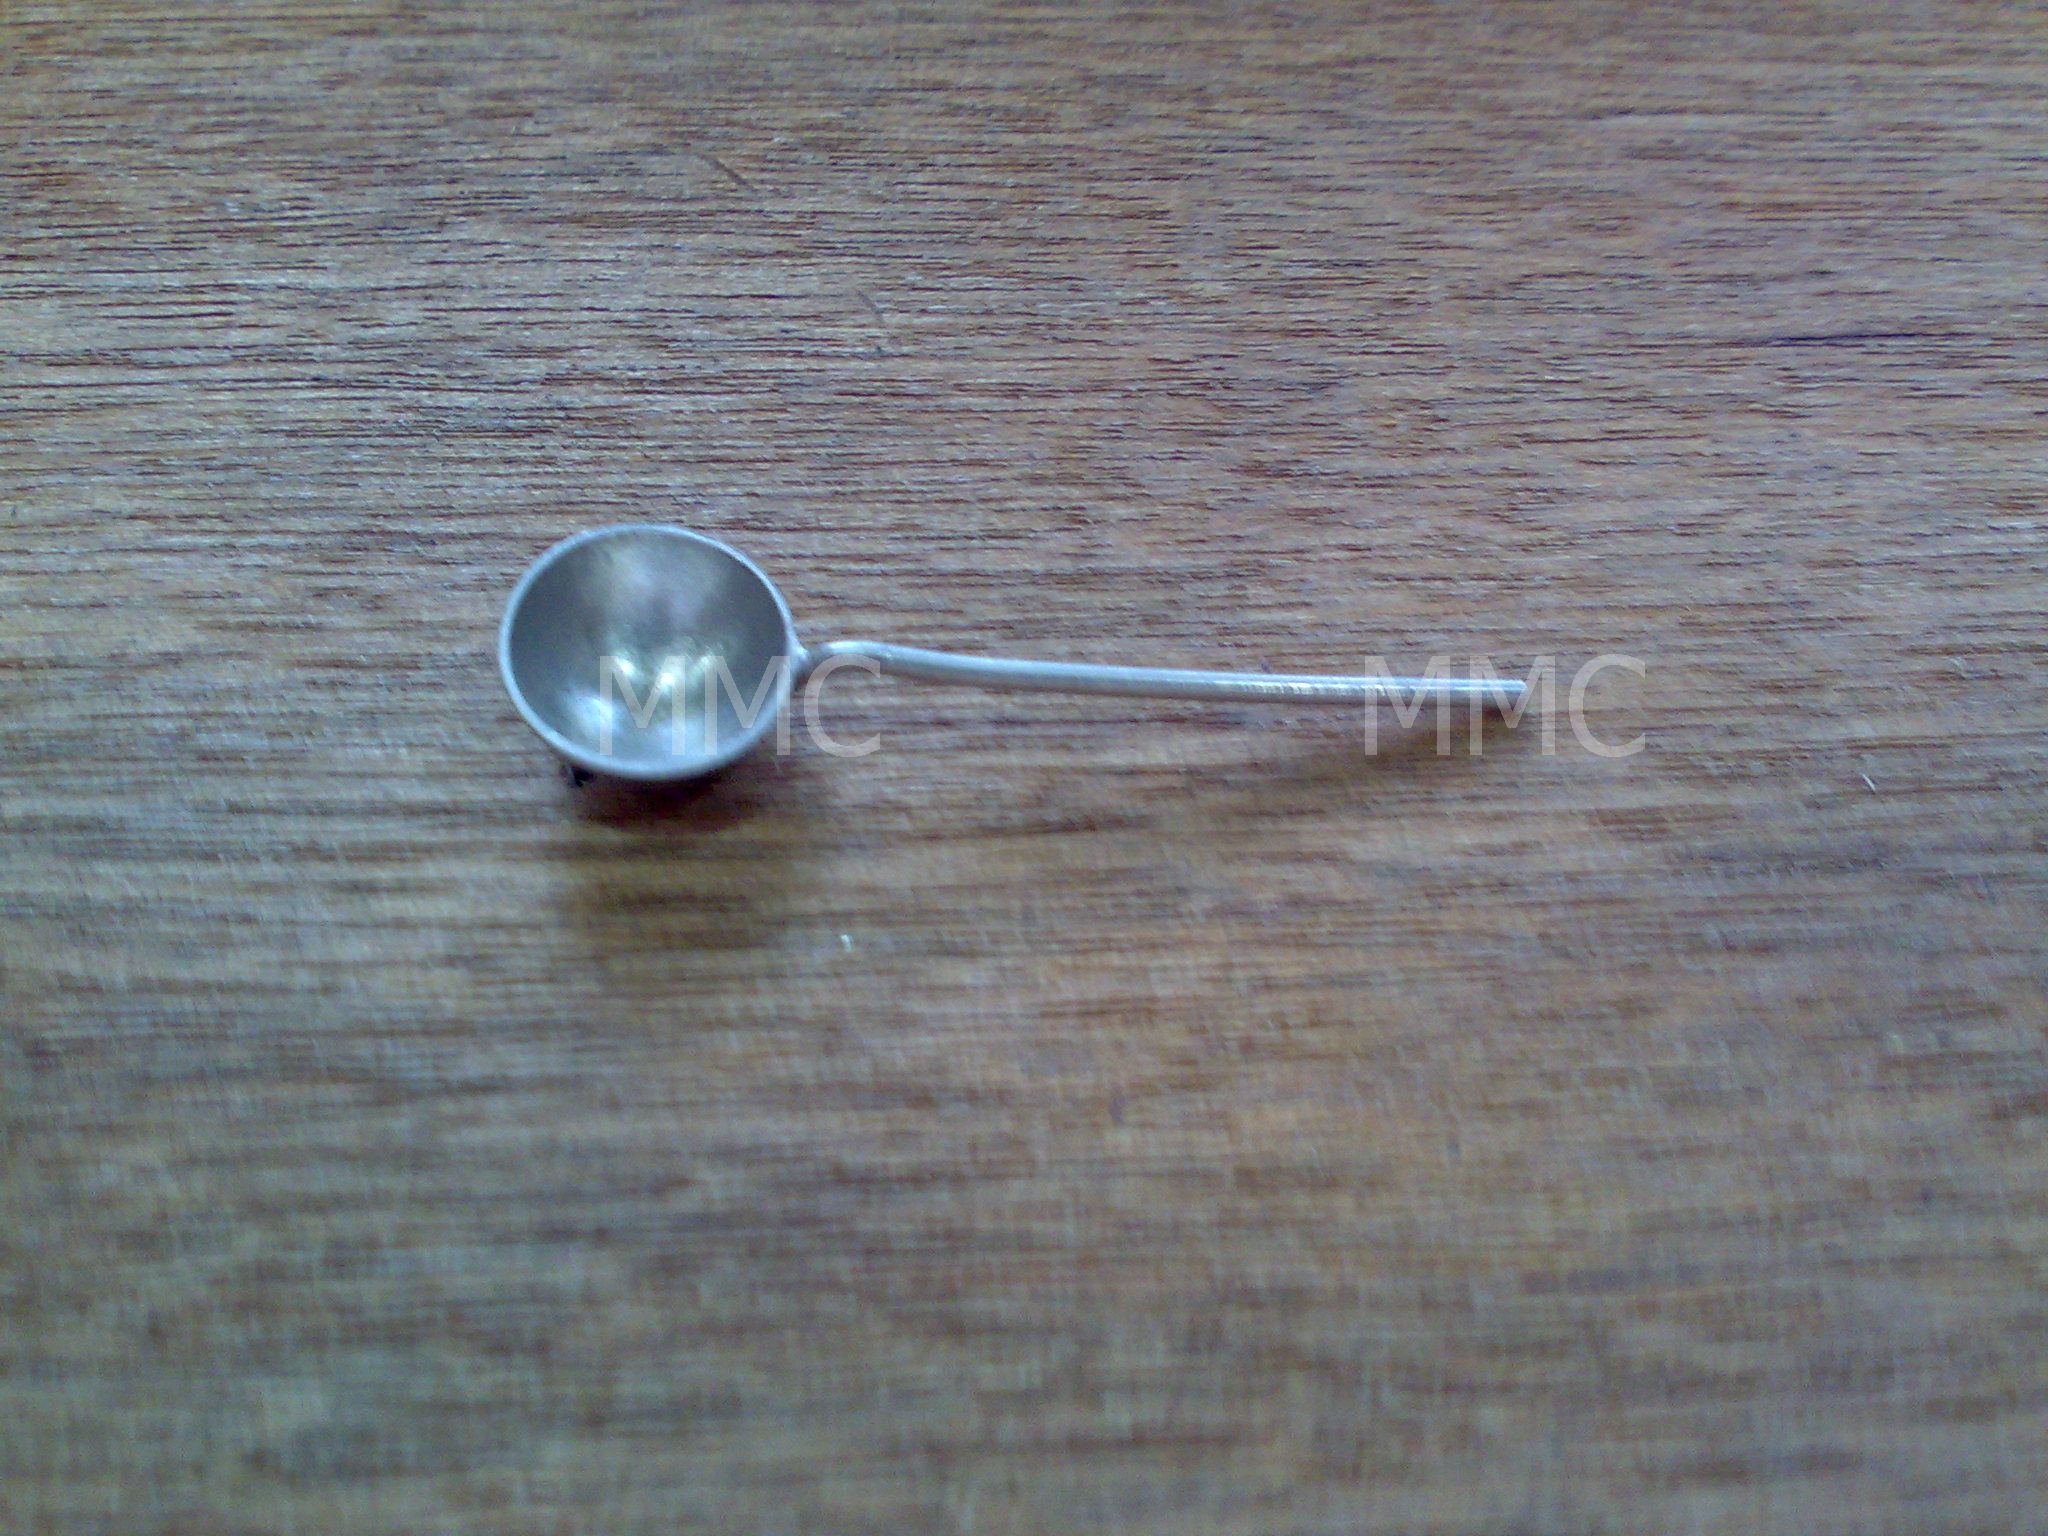 Platinum Spoons